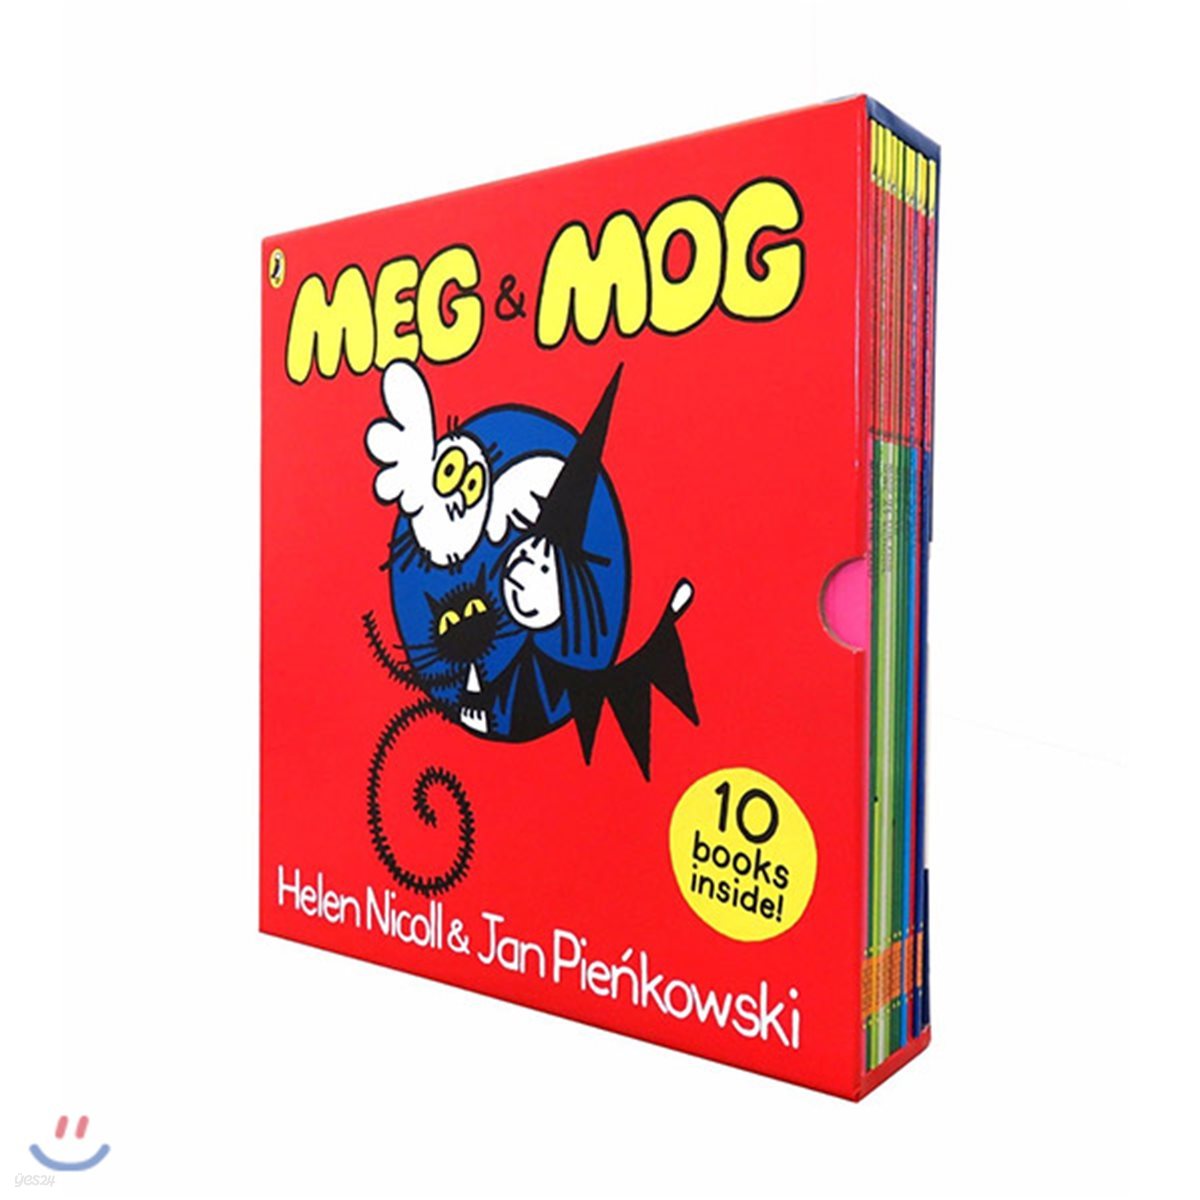 메그와 모그 원서 그림책 10권 세트 (영국판) : Meg & Mog Picture Book Box Set